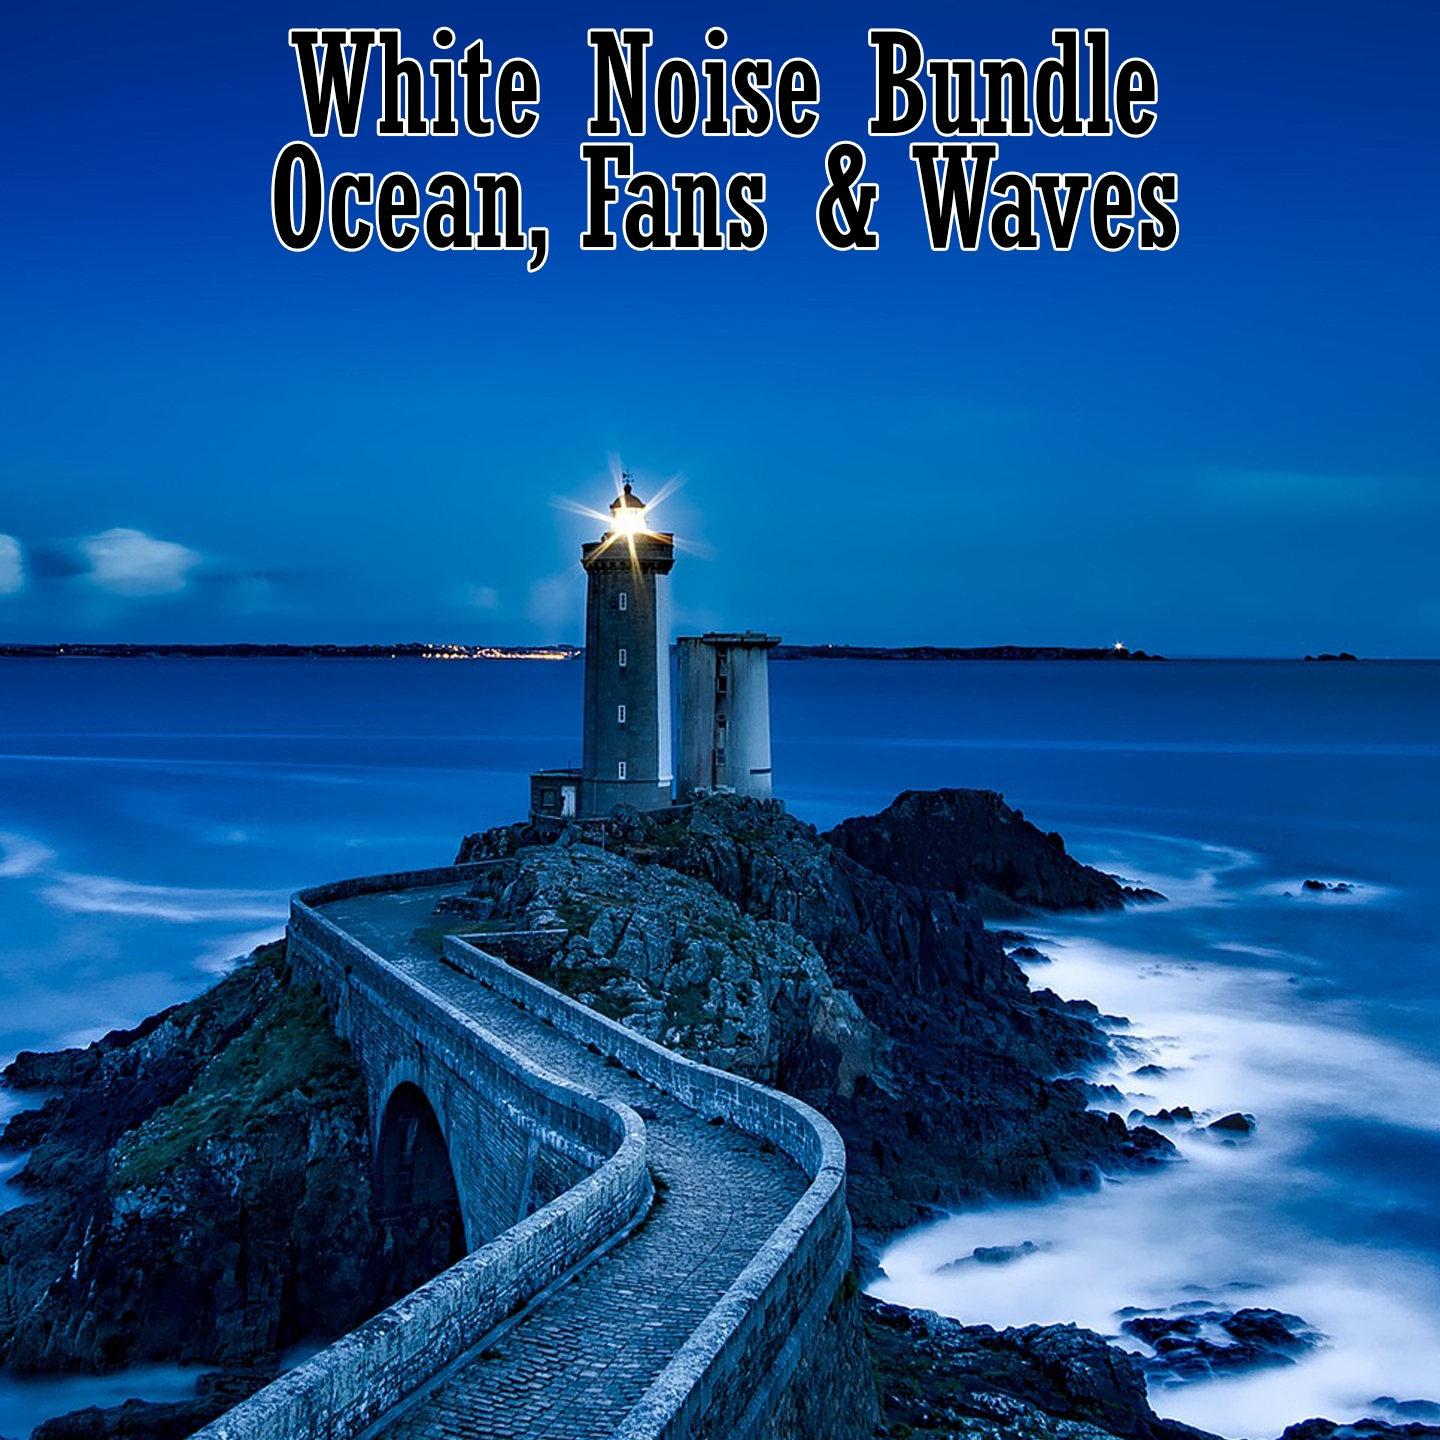 White Noise Bundle Oceans, Fans & Waves